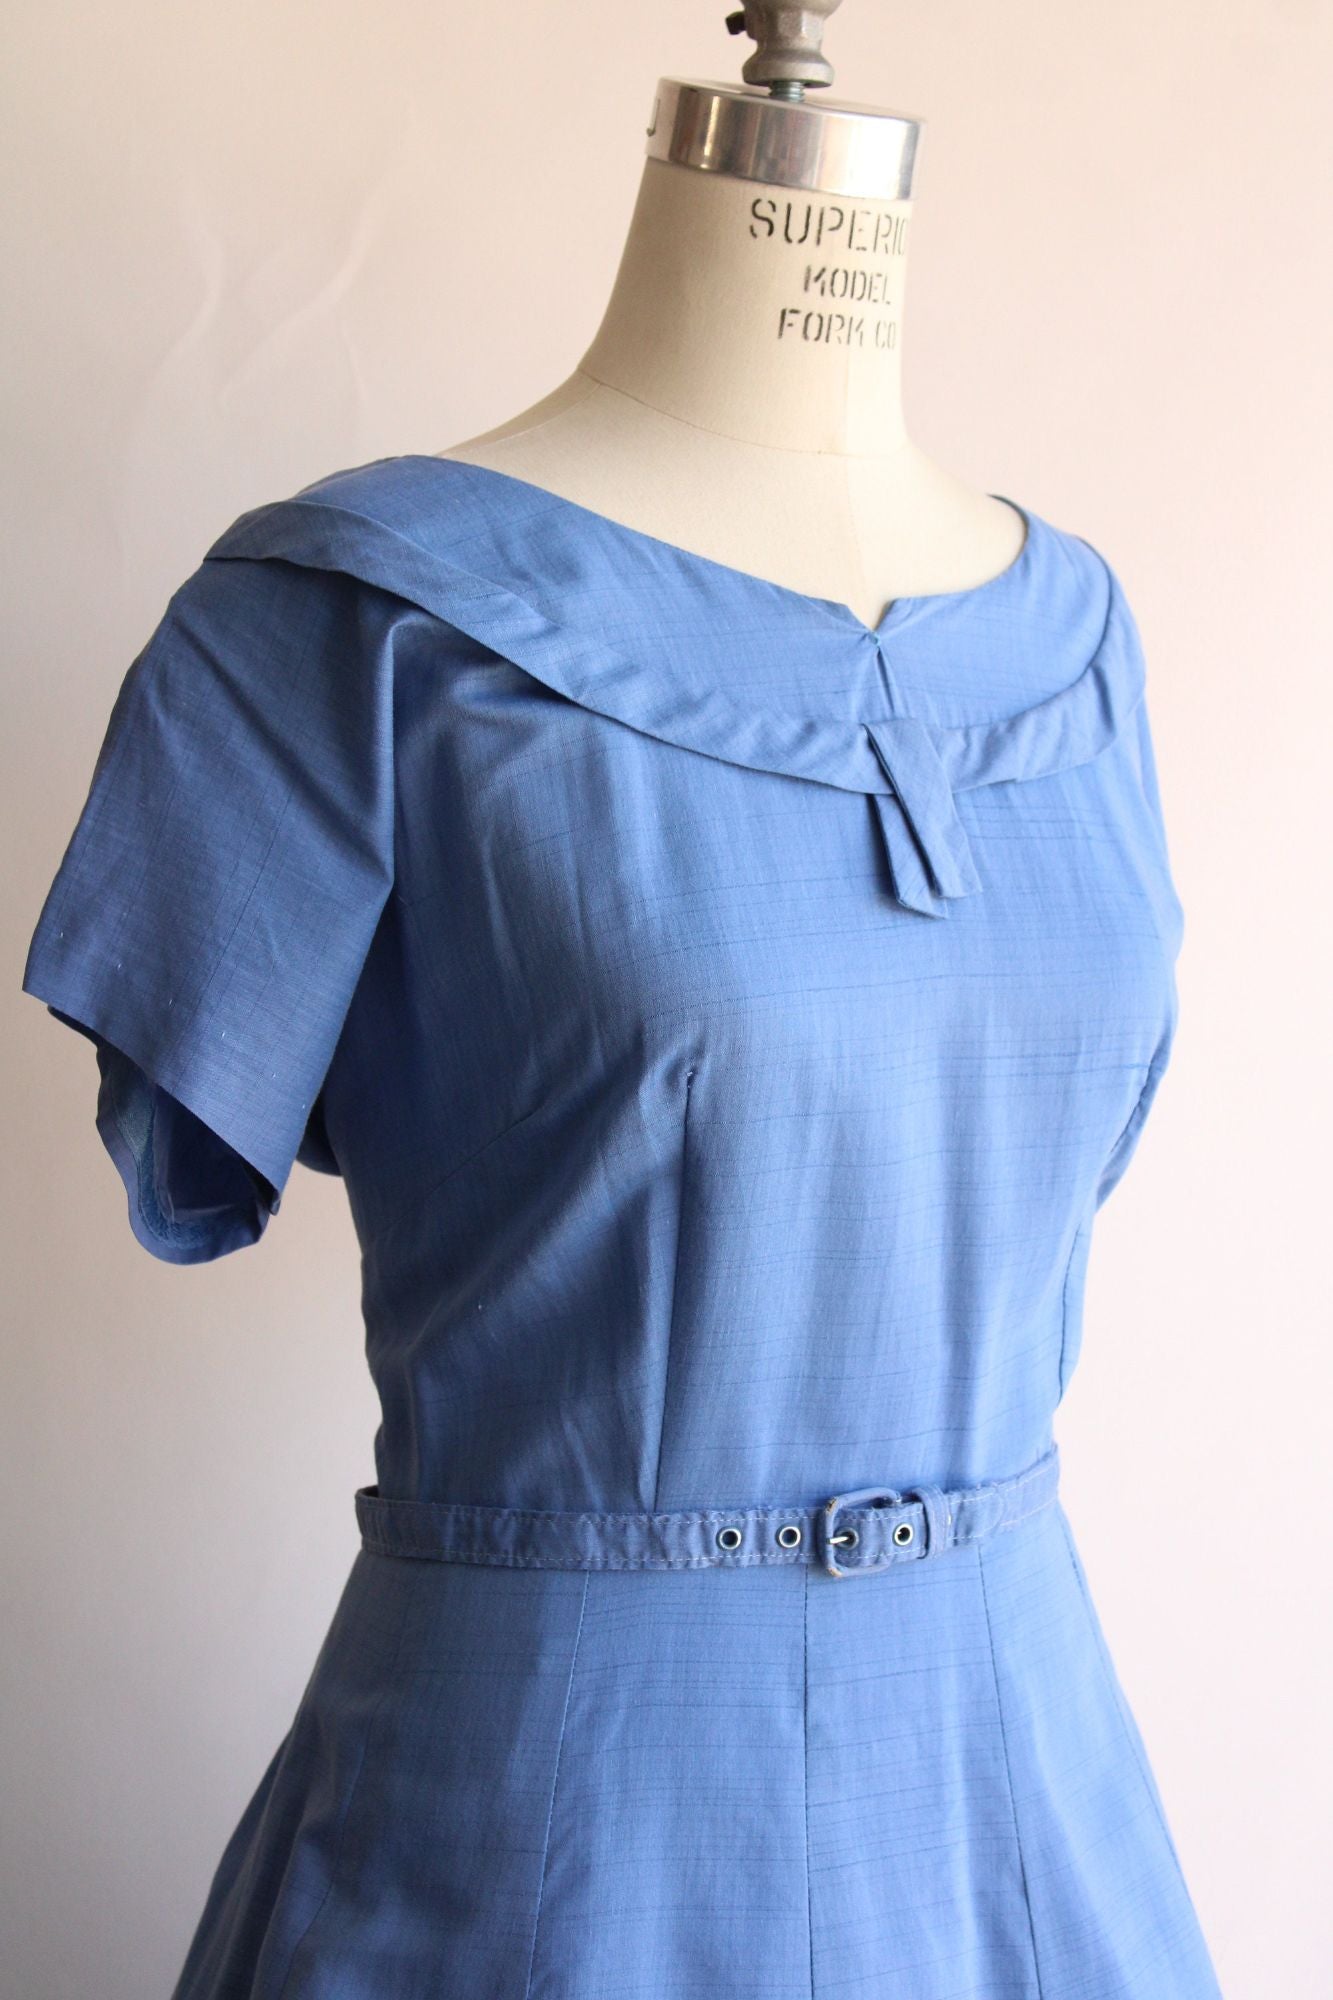 Vintage 1950s Volup Size Sky Blue Cotton Sundress with Belt